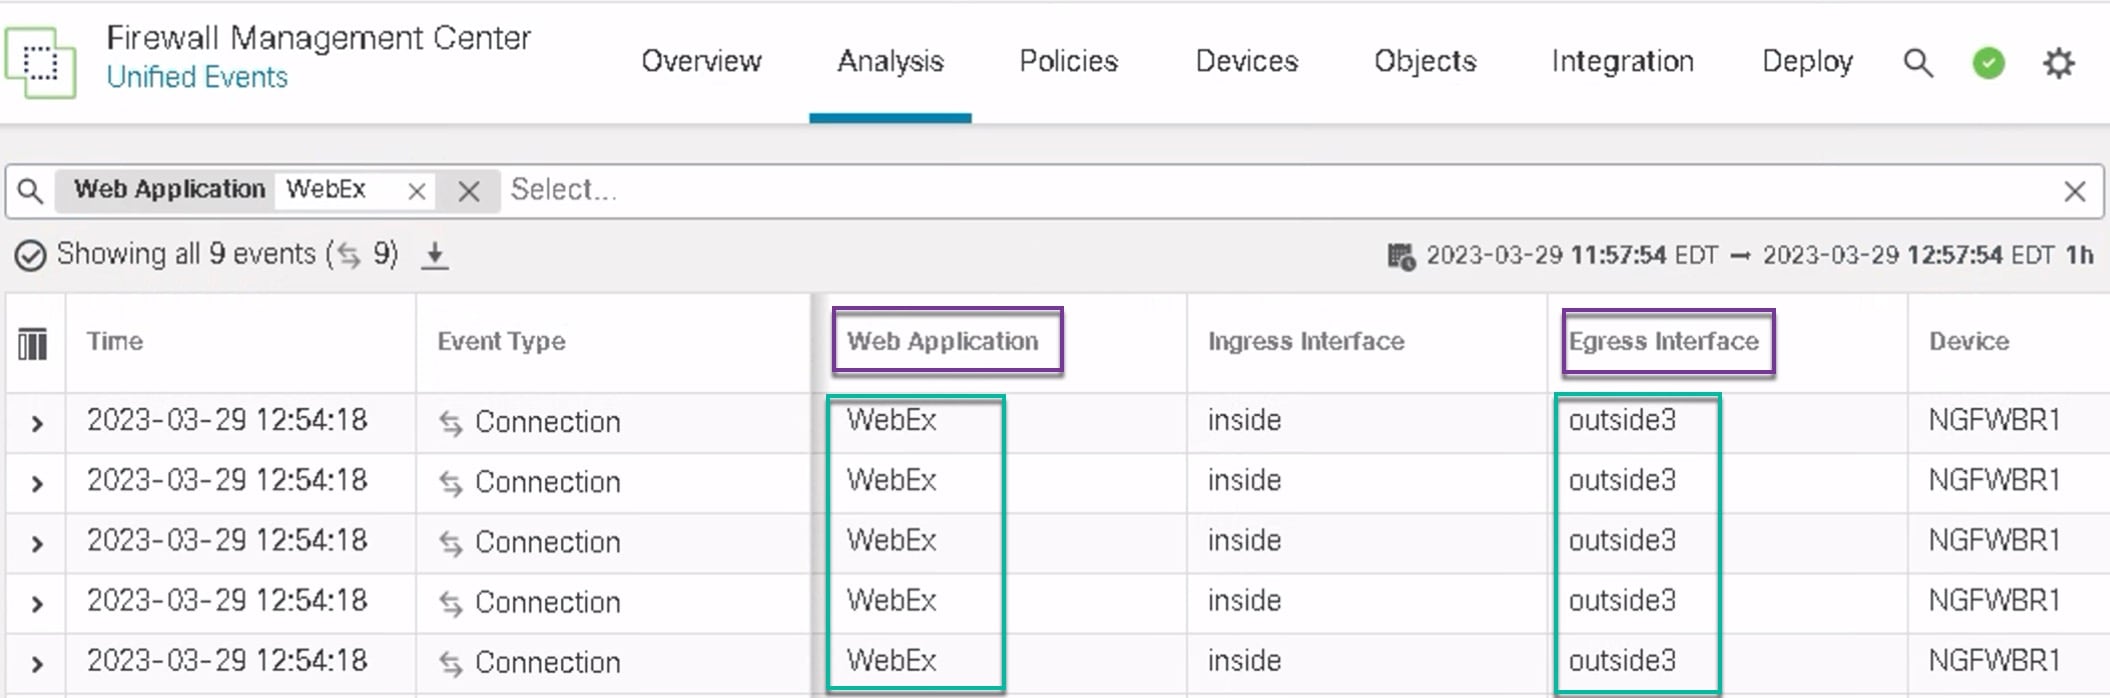 이미지에서 WebEx 애플리케이션 트래픽은 통합 이벤트 페이지에 표시된 outside3 인터페이스를 통해 전송됩니다.